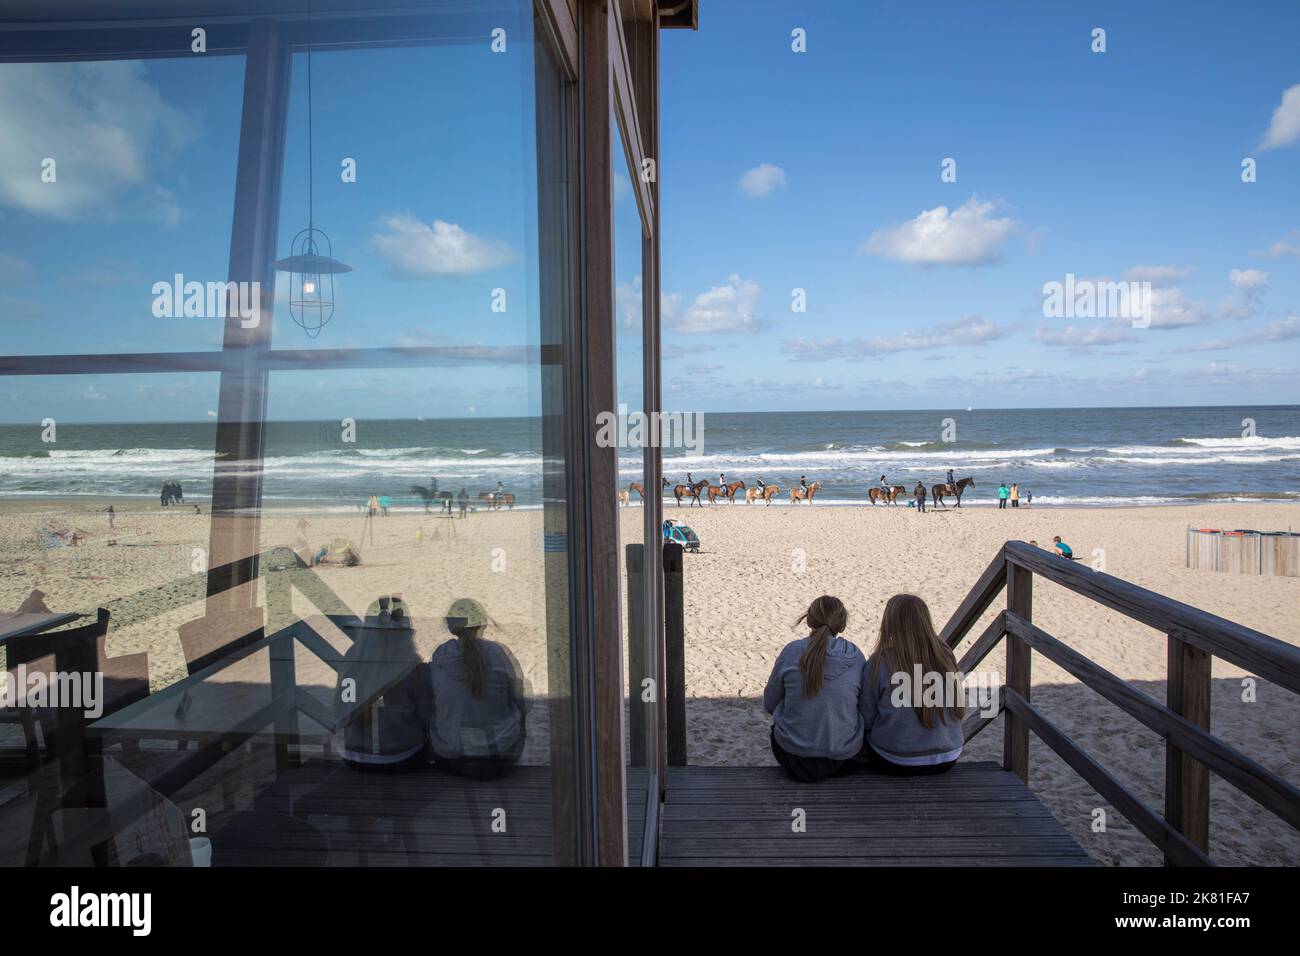 Riflessione in una finestra del padiglione della spiaggia Lage Duintjes vicino Oostkapelle sulla penisola Walcheren, Zeeland, Paesi Bassi. Spiegelung am Strandpavi Foto Stock